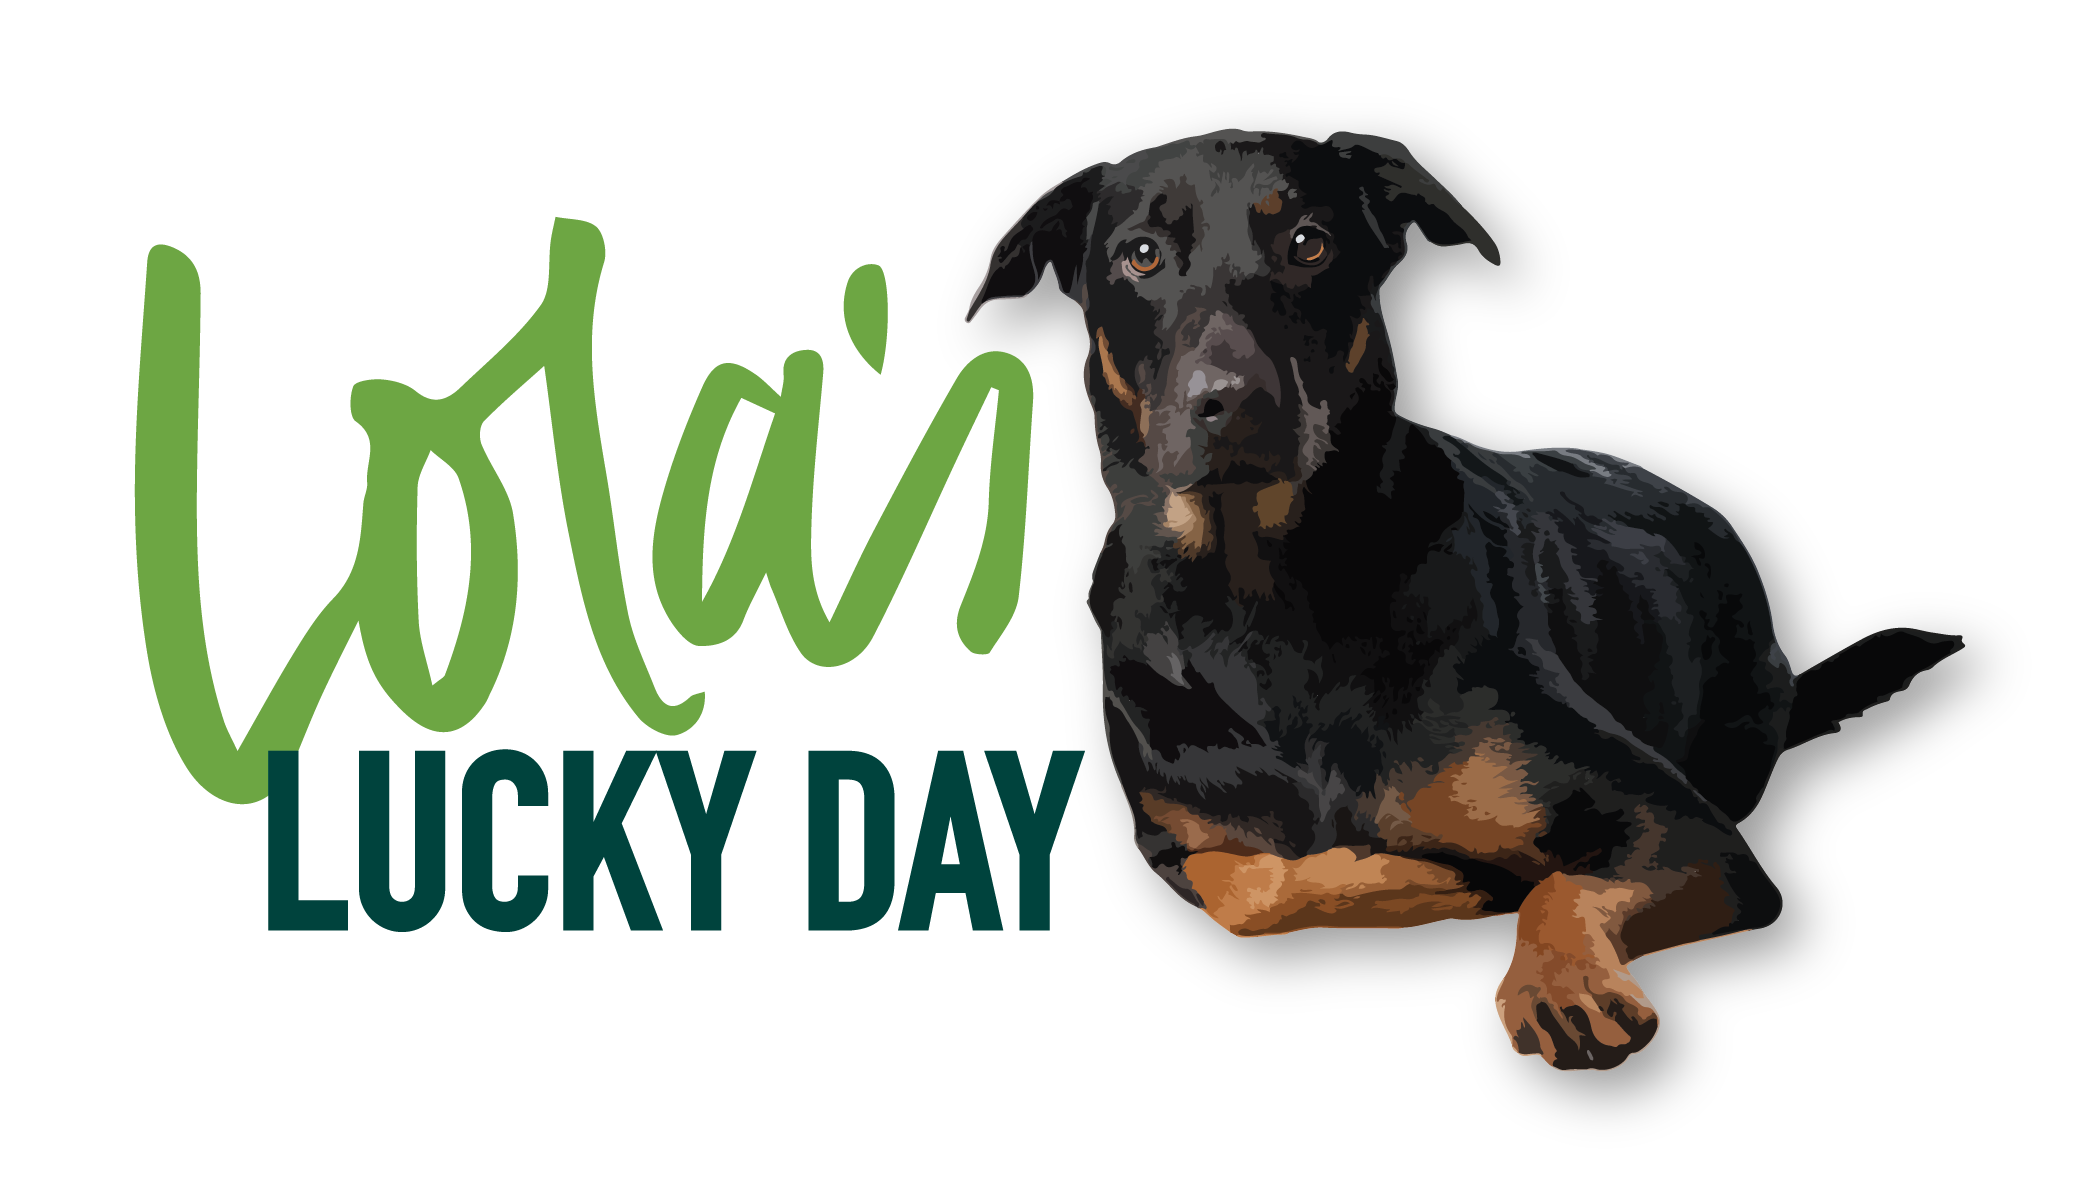 Lola's Lucky Day logo